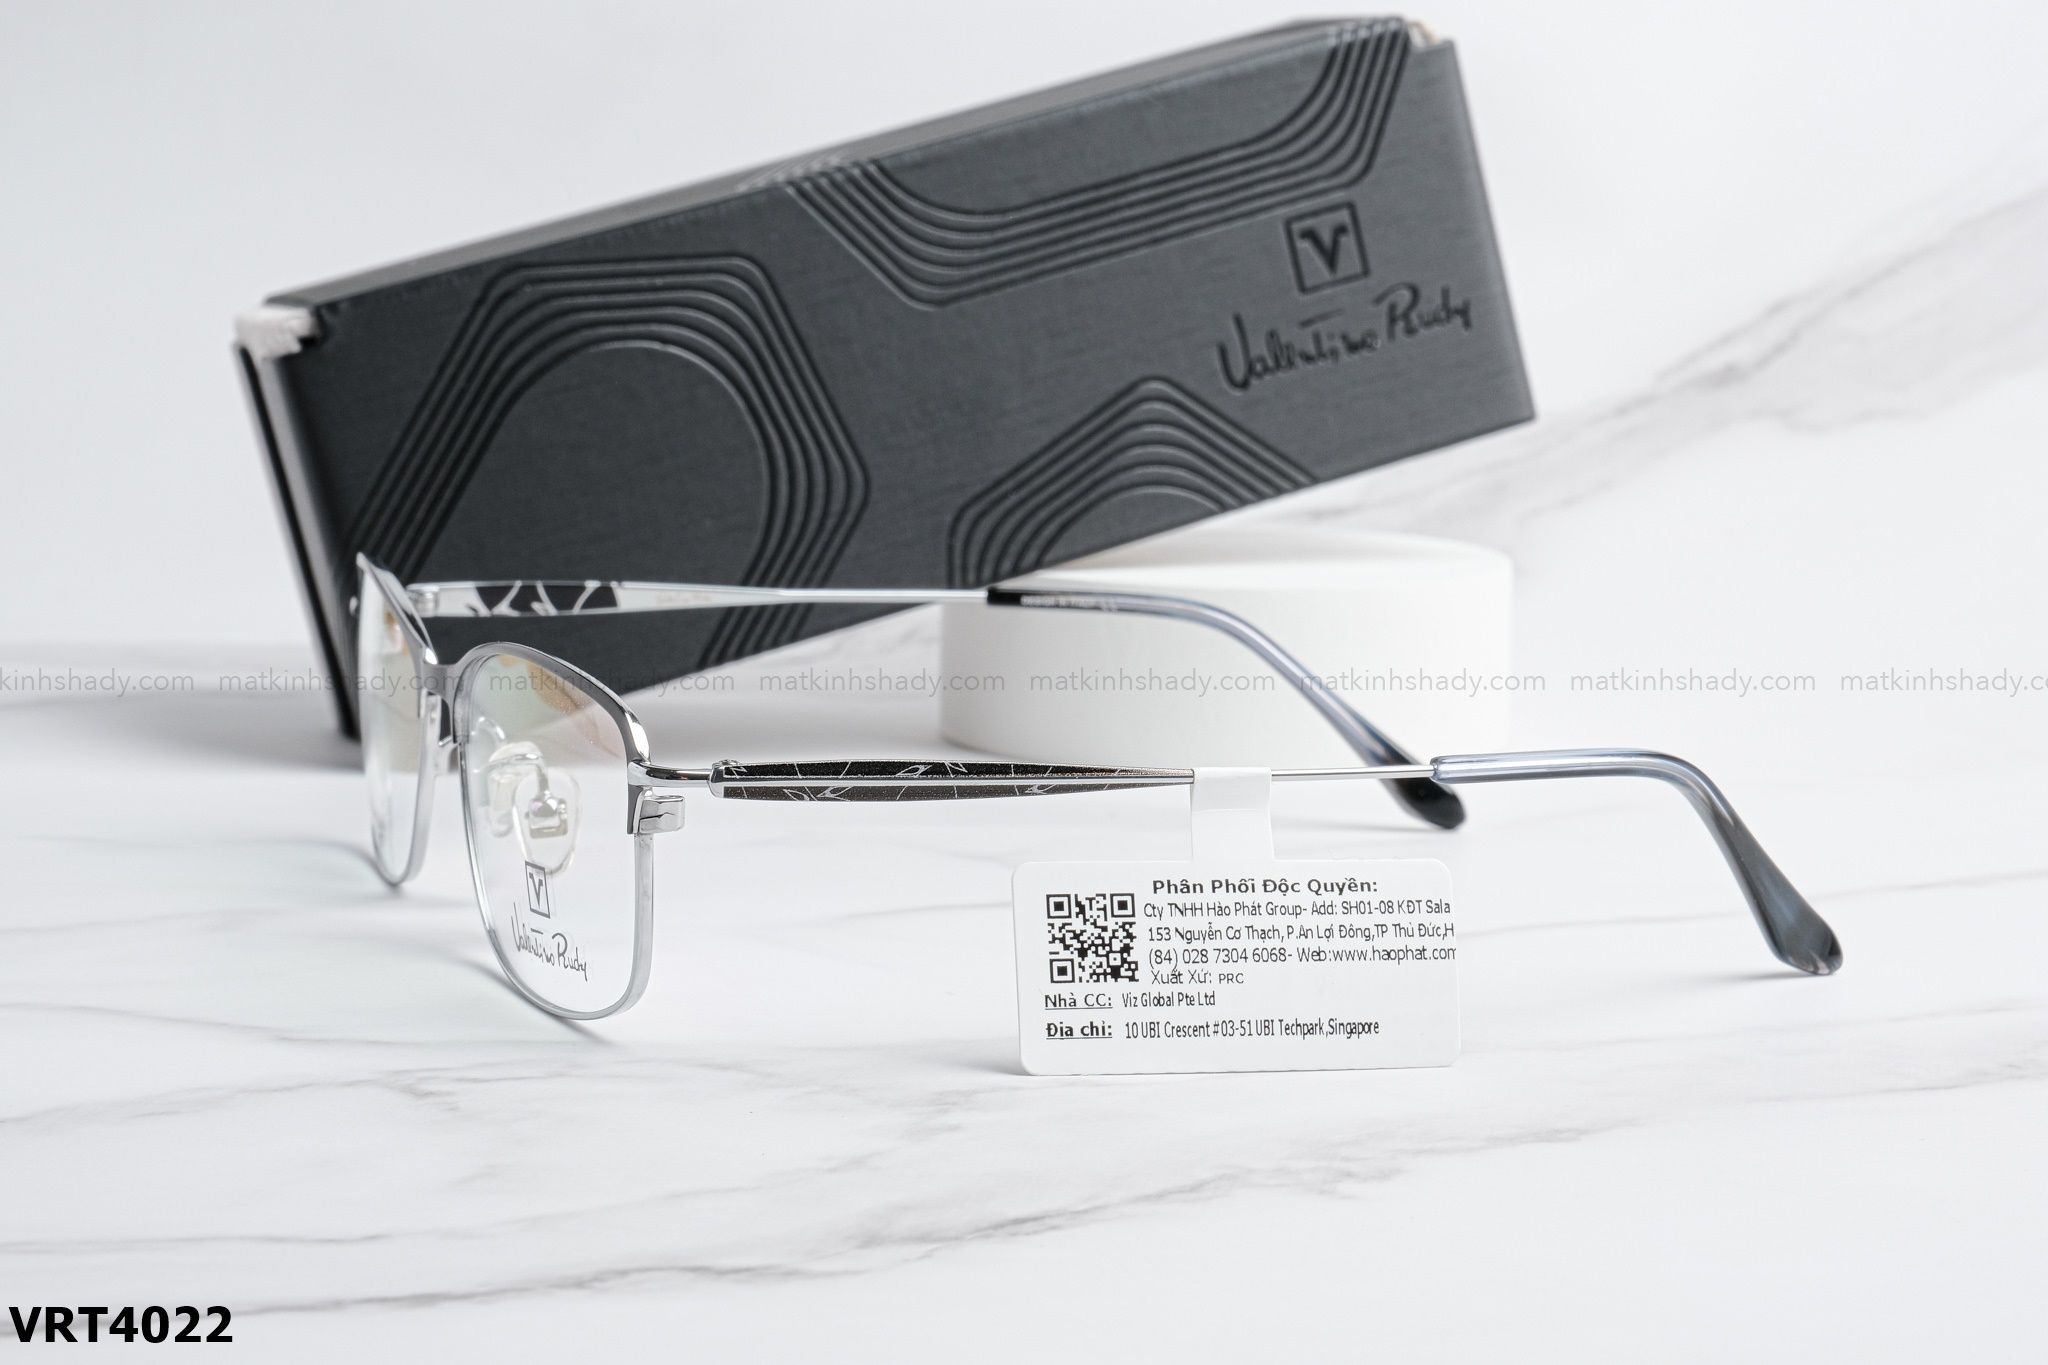  Valentino Eyewear - Glasses - VRT4022 